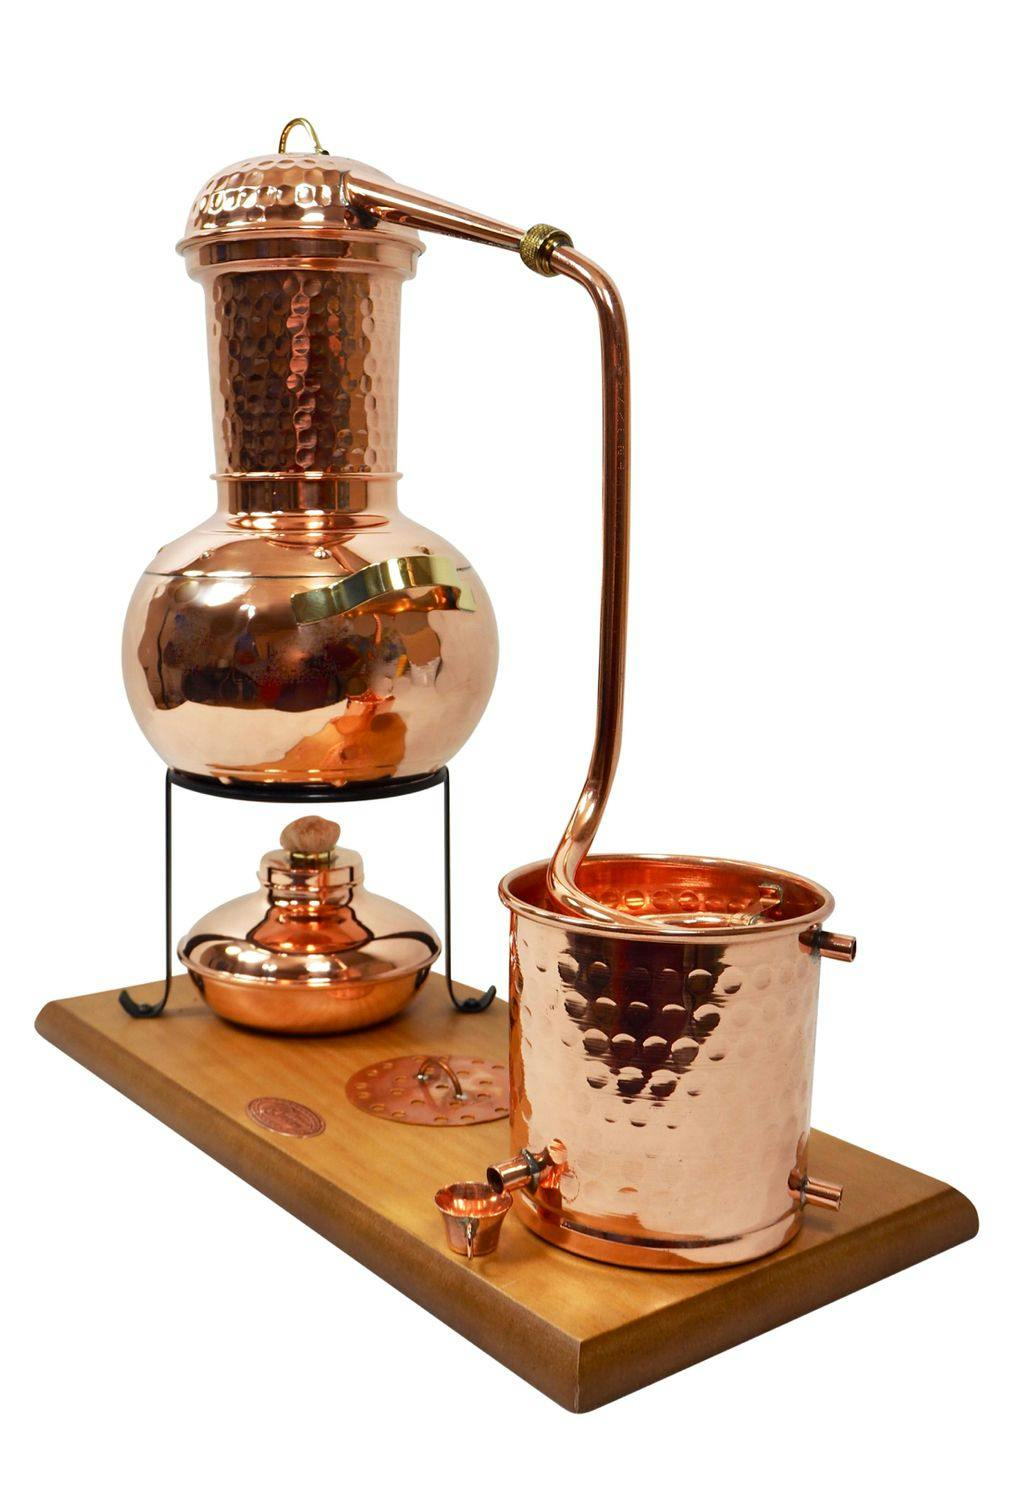 CopperGarden® Tischdestille Arabia 2 Liter ❁ Sorgenfrei Paket mit allem Zubehör 